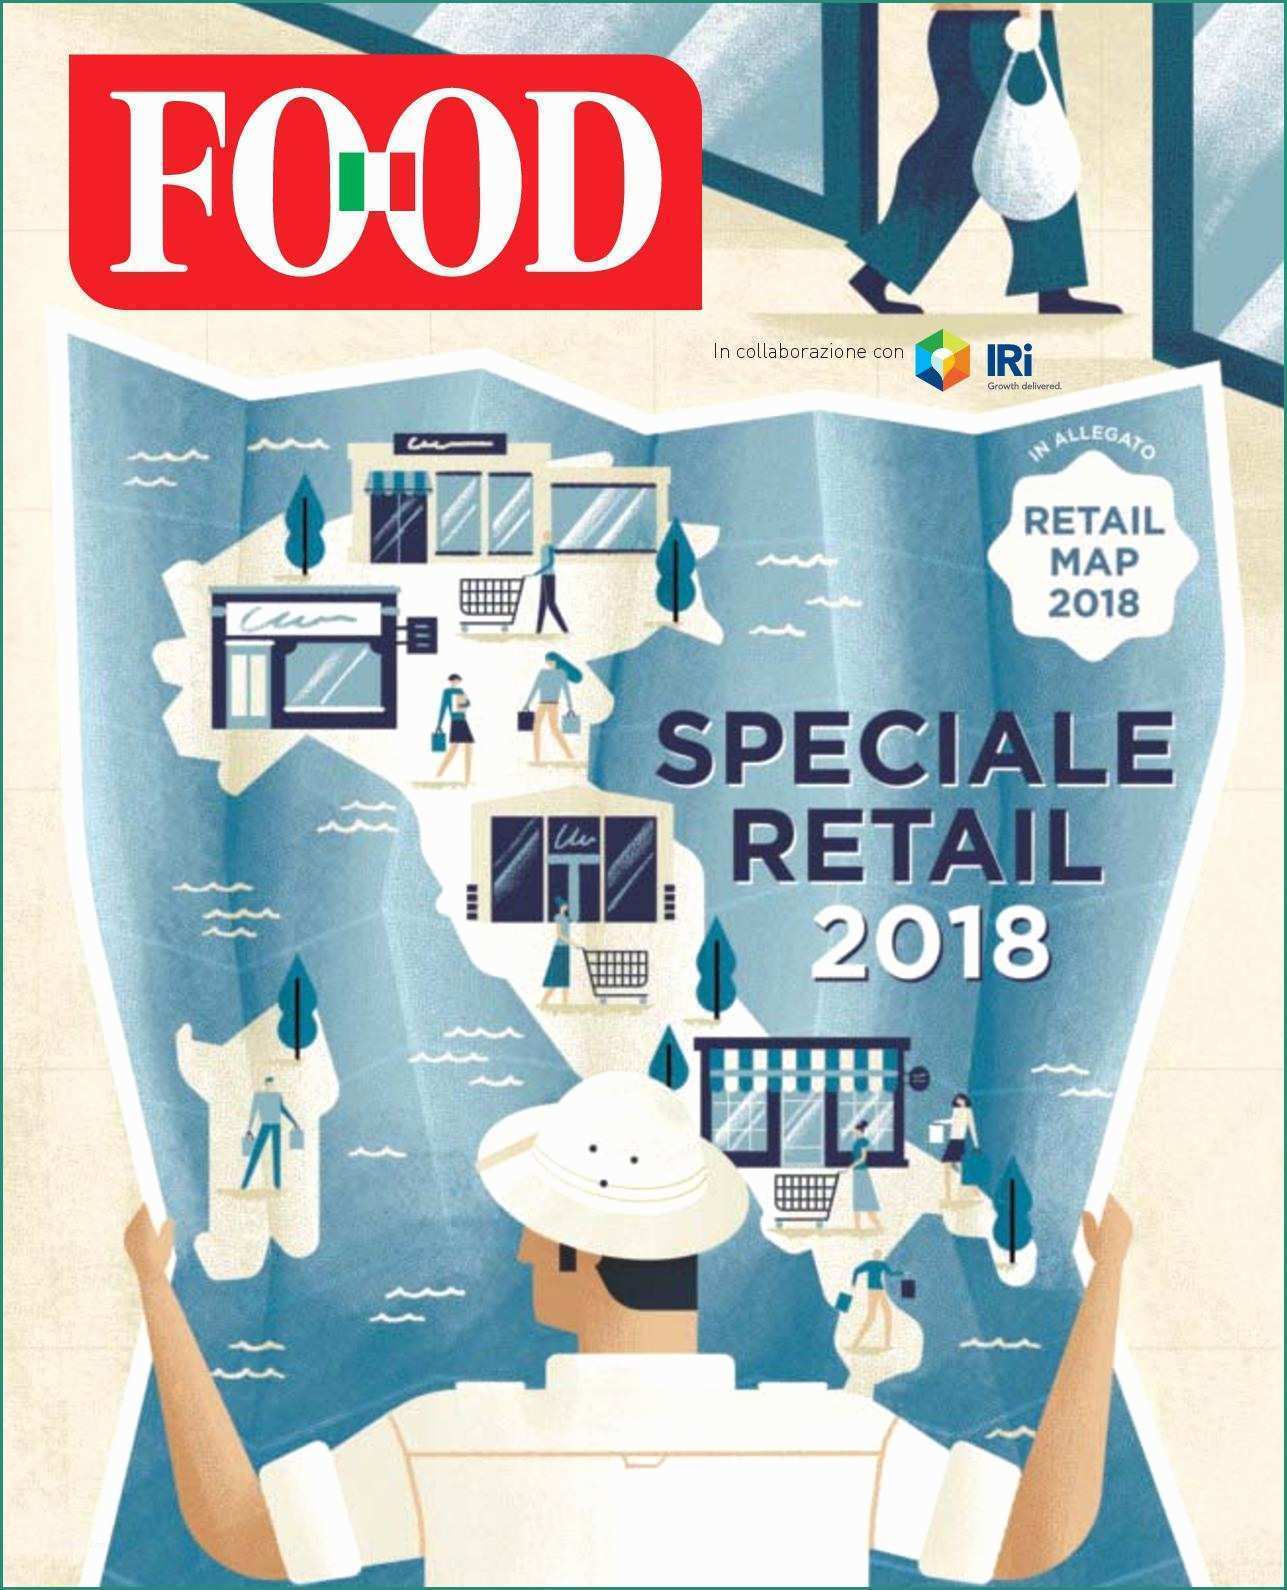 Sanitaria Demma Palermo E Calaméo Food Speciale Retail 2018 Pleto